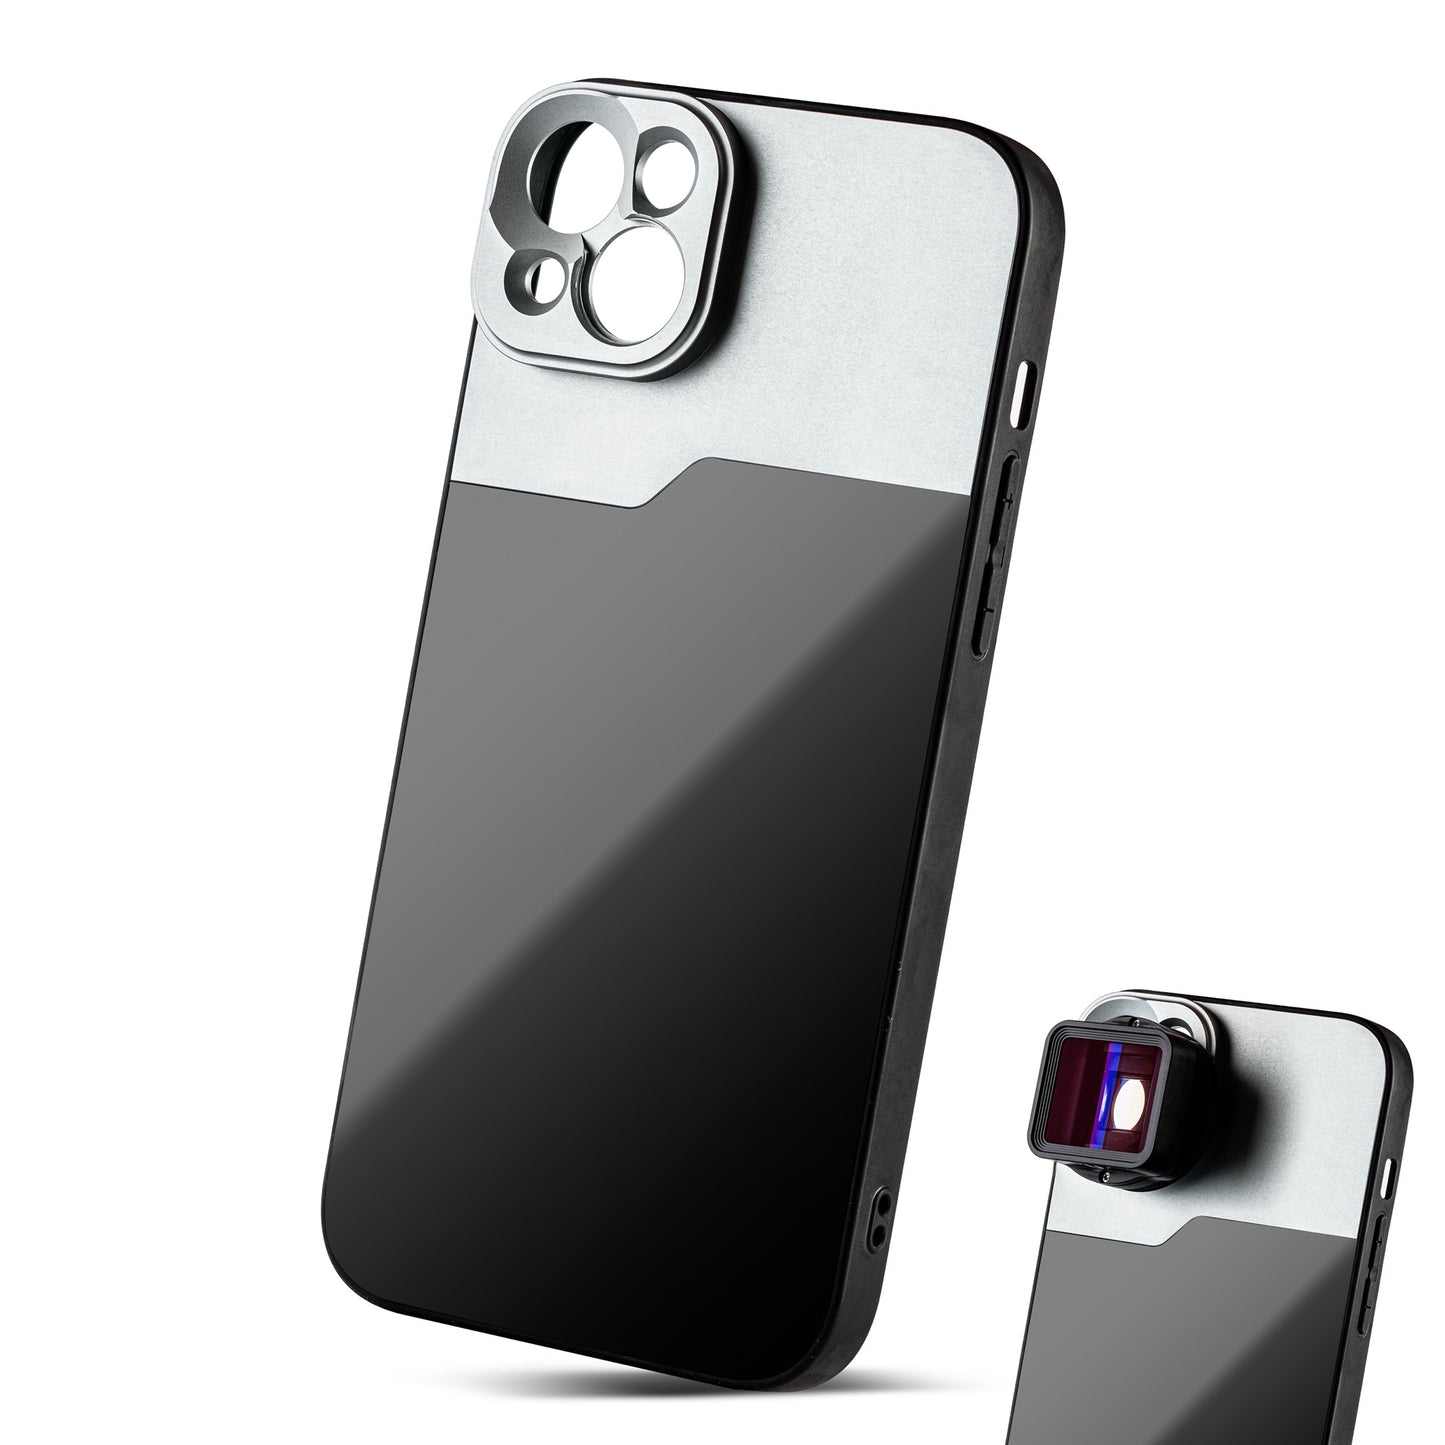 MOJOGEAR 17mm lens case voor iPhone 13 en 14 - Zwart/Grijs